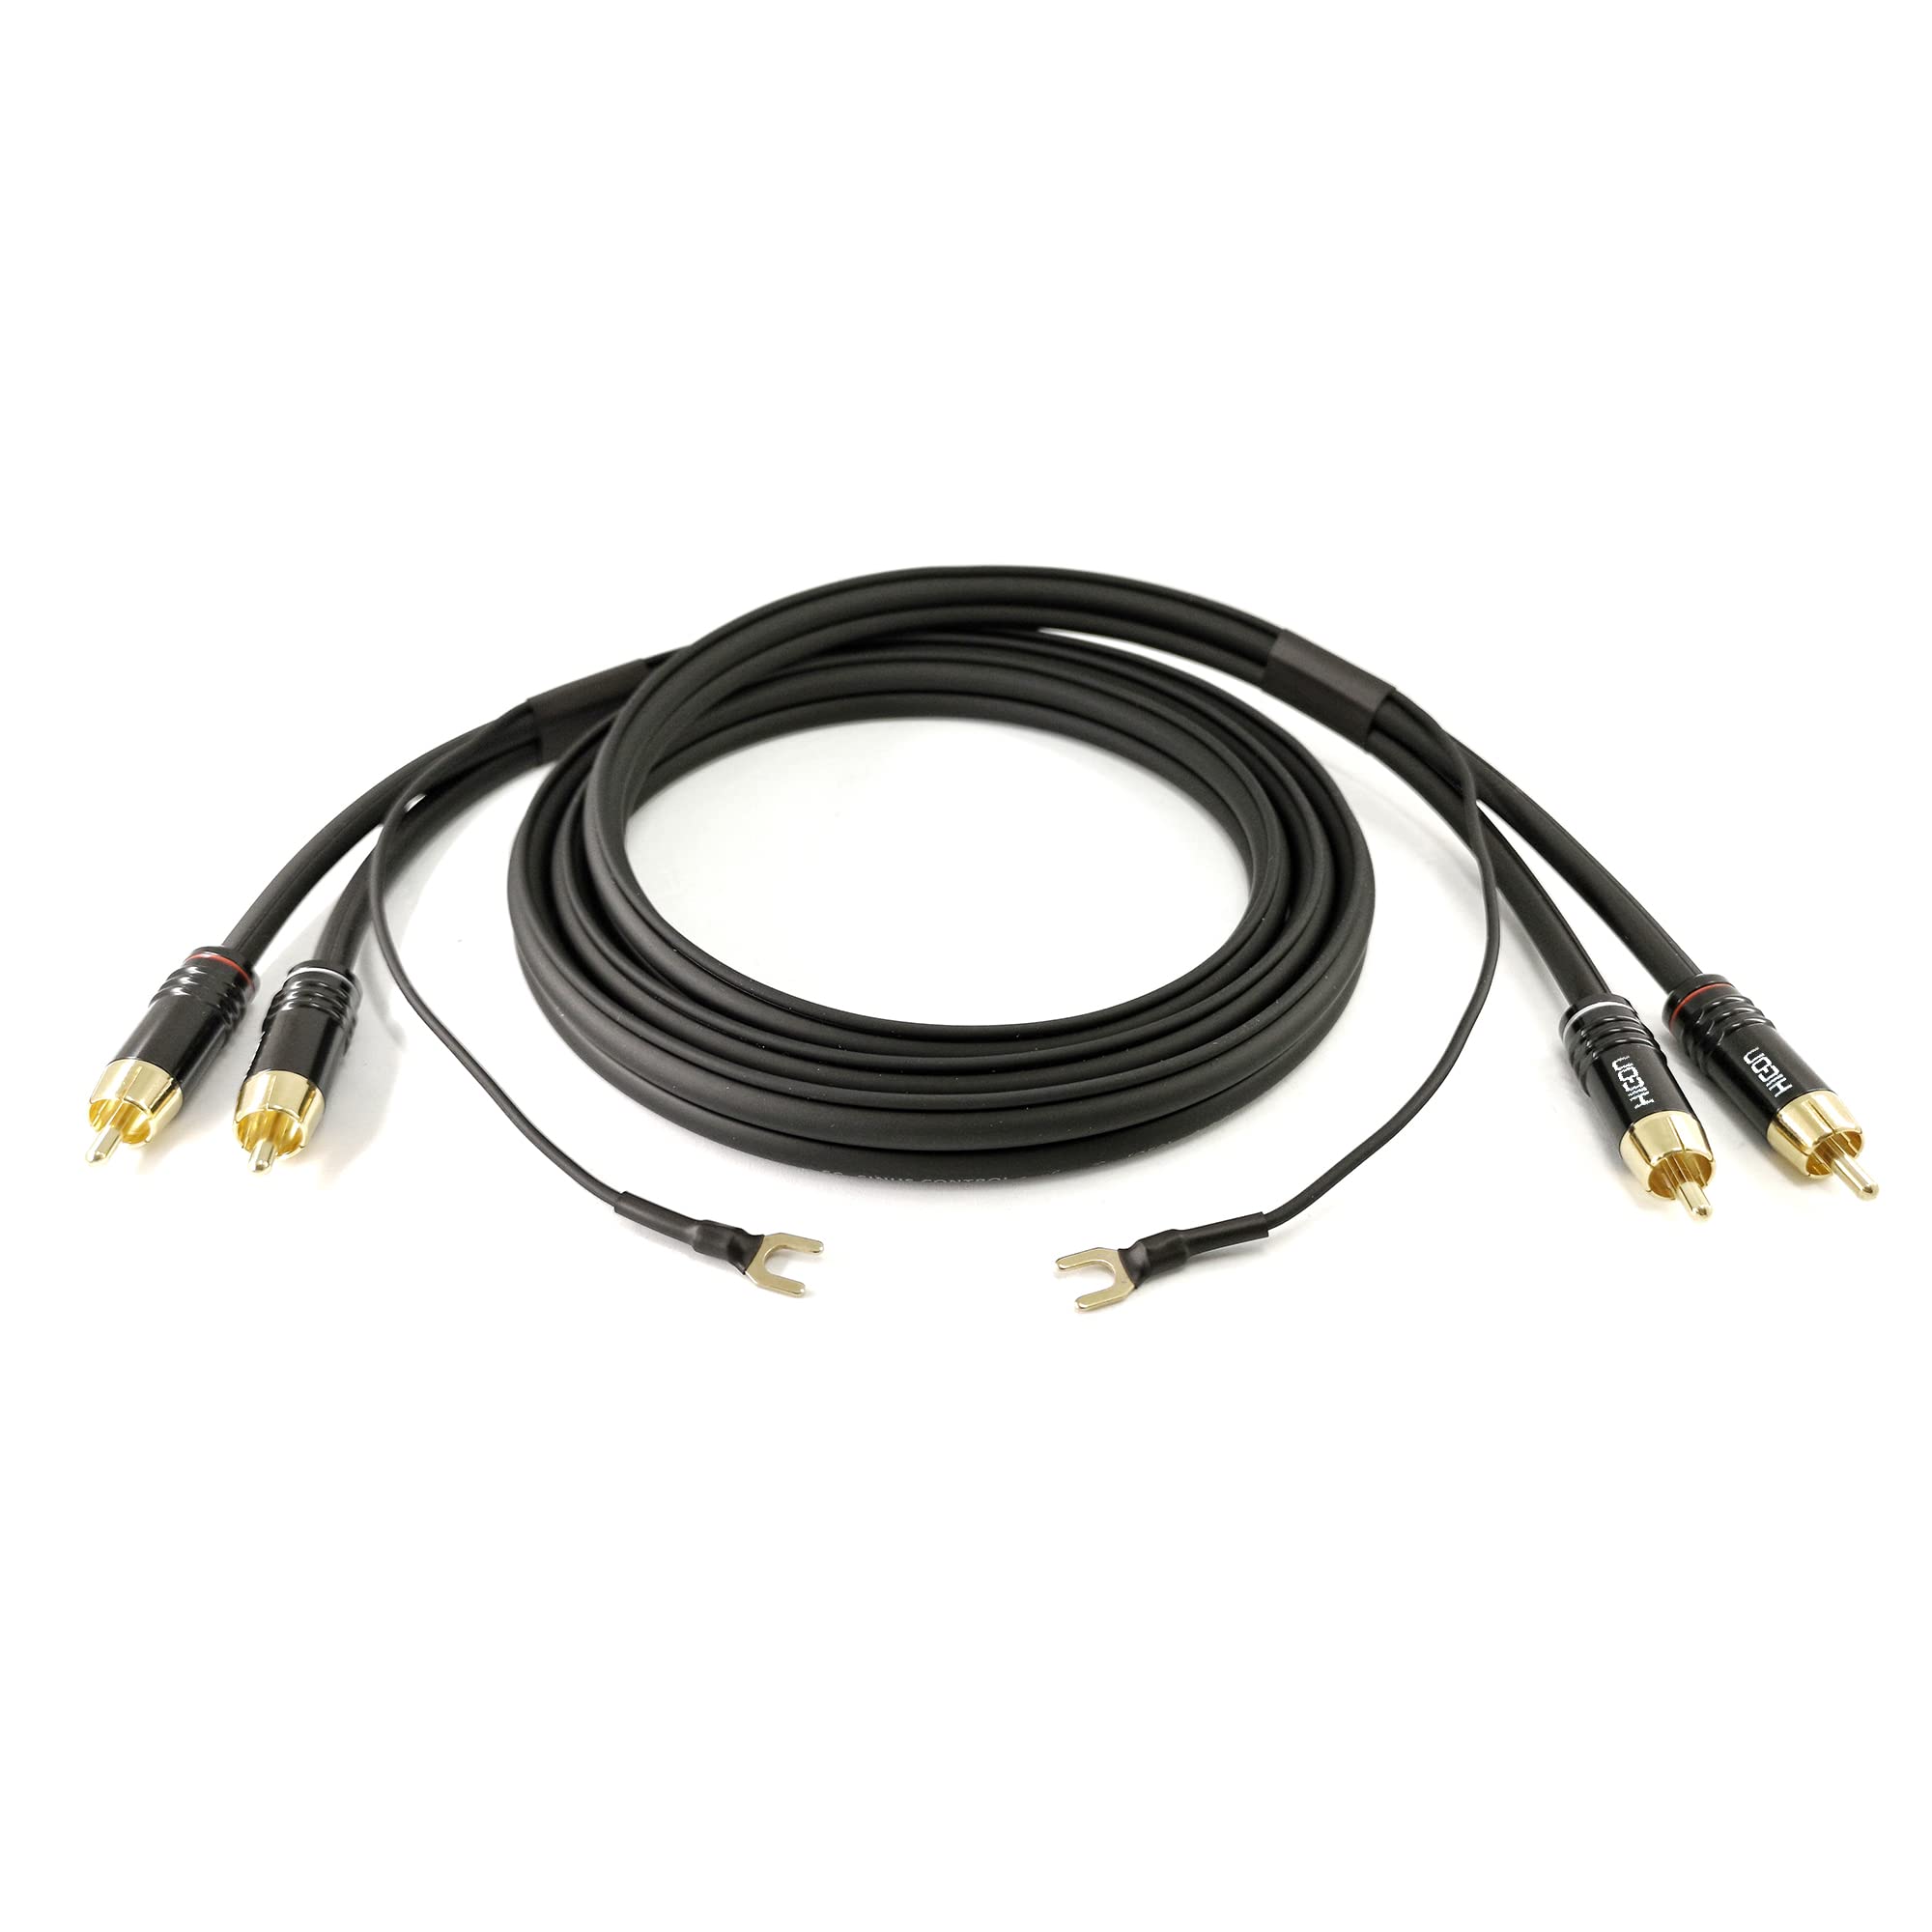 Selected Cable 12m langes Phonokabel Cinchkabel geschirmt Audioleitung 2x 0,35mm² extra längere Masseleitung 1x 0,35mm² vergoldete RCA Stecker - SC81-K3-BLK-1200